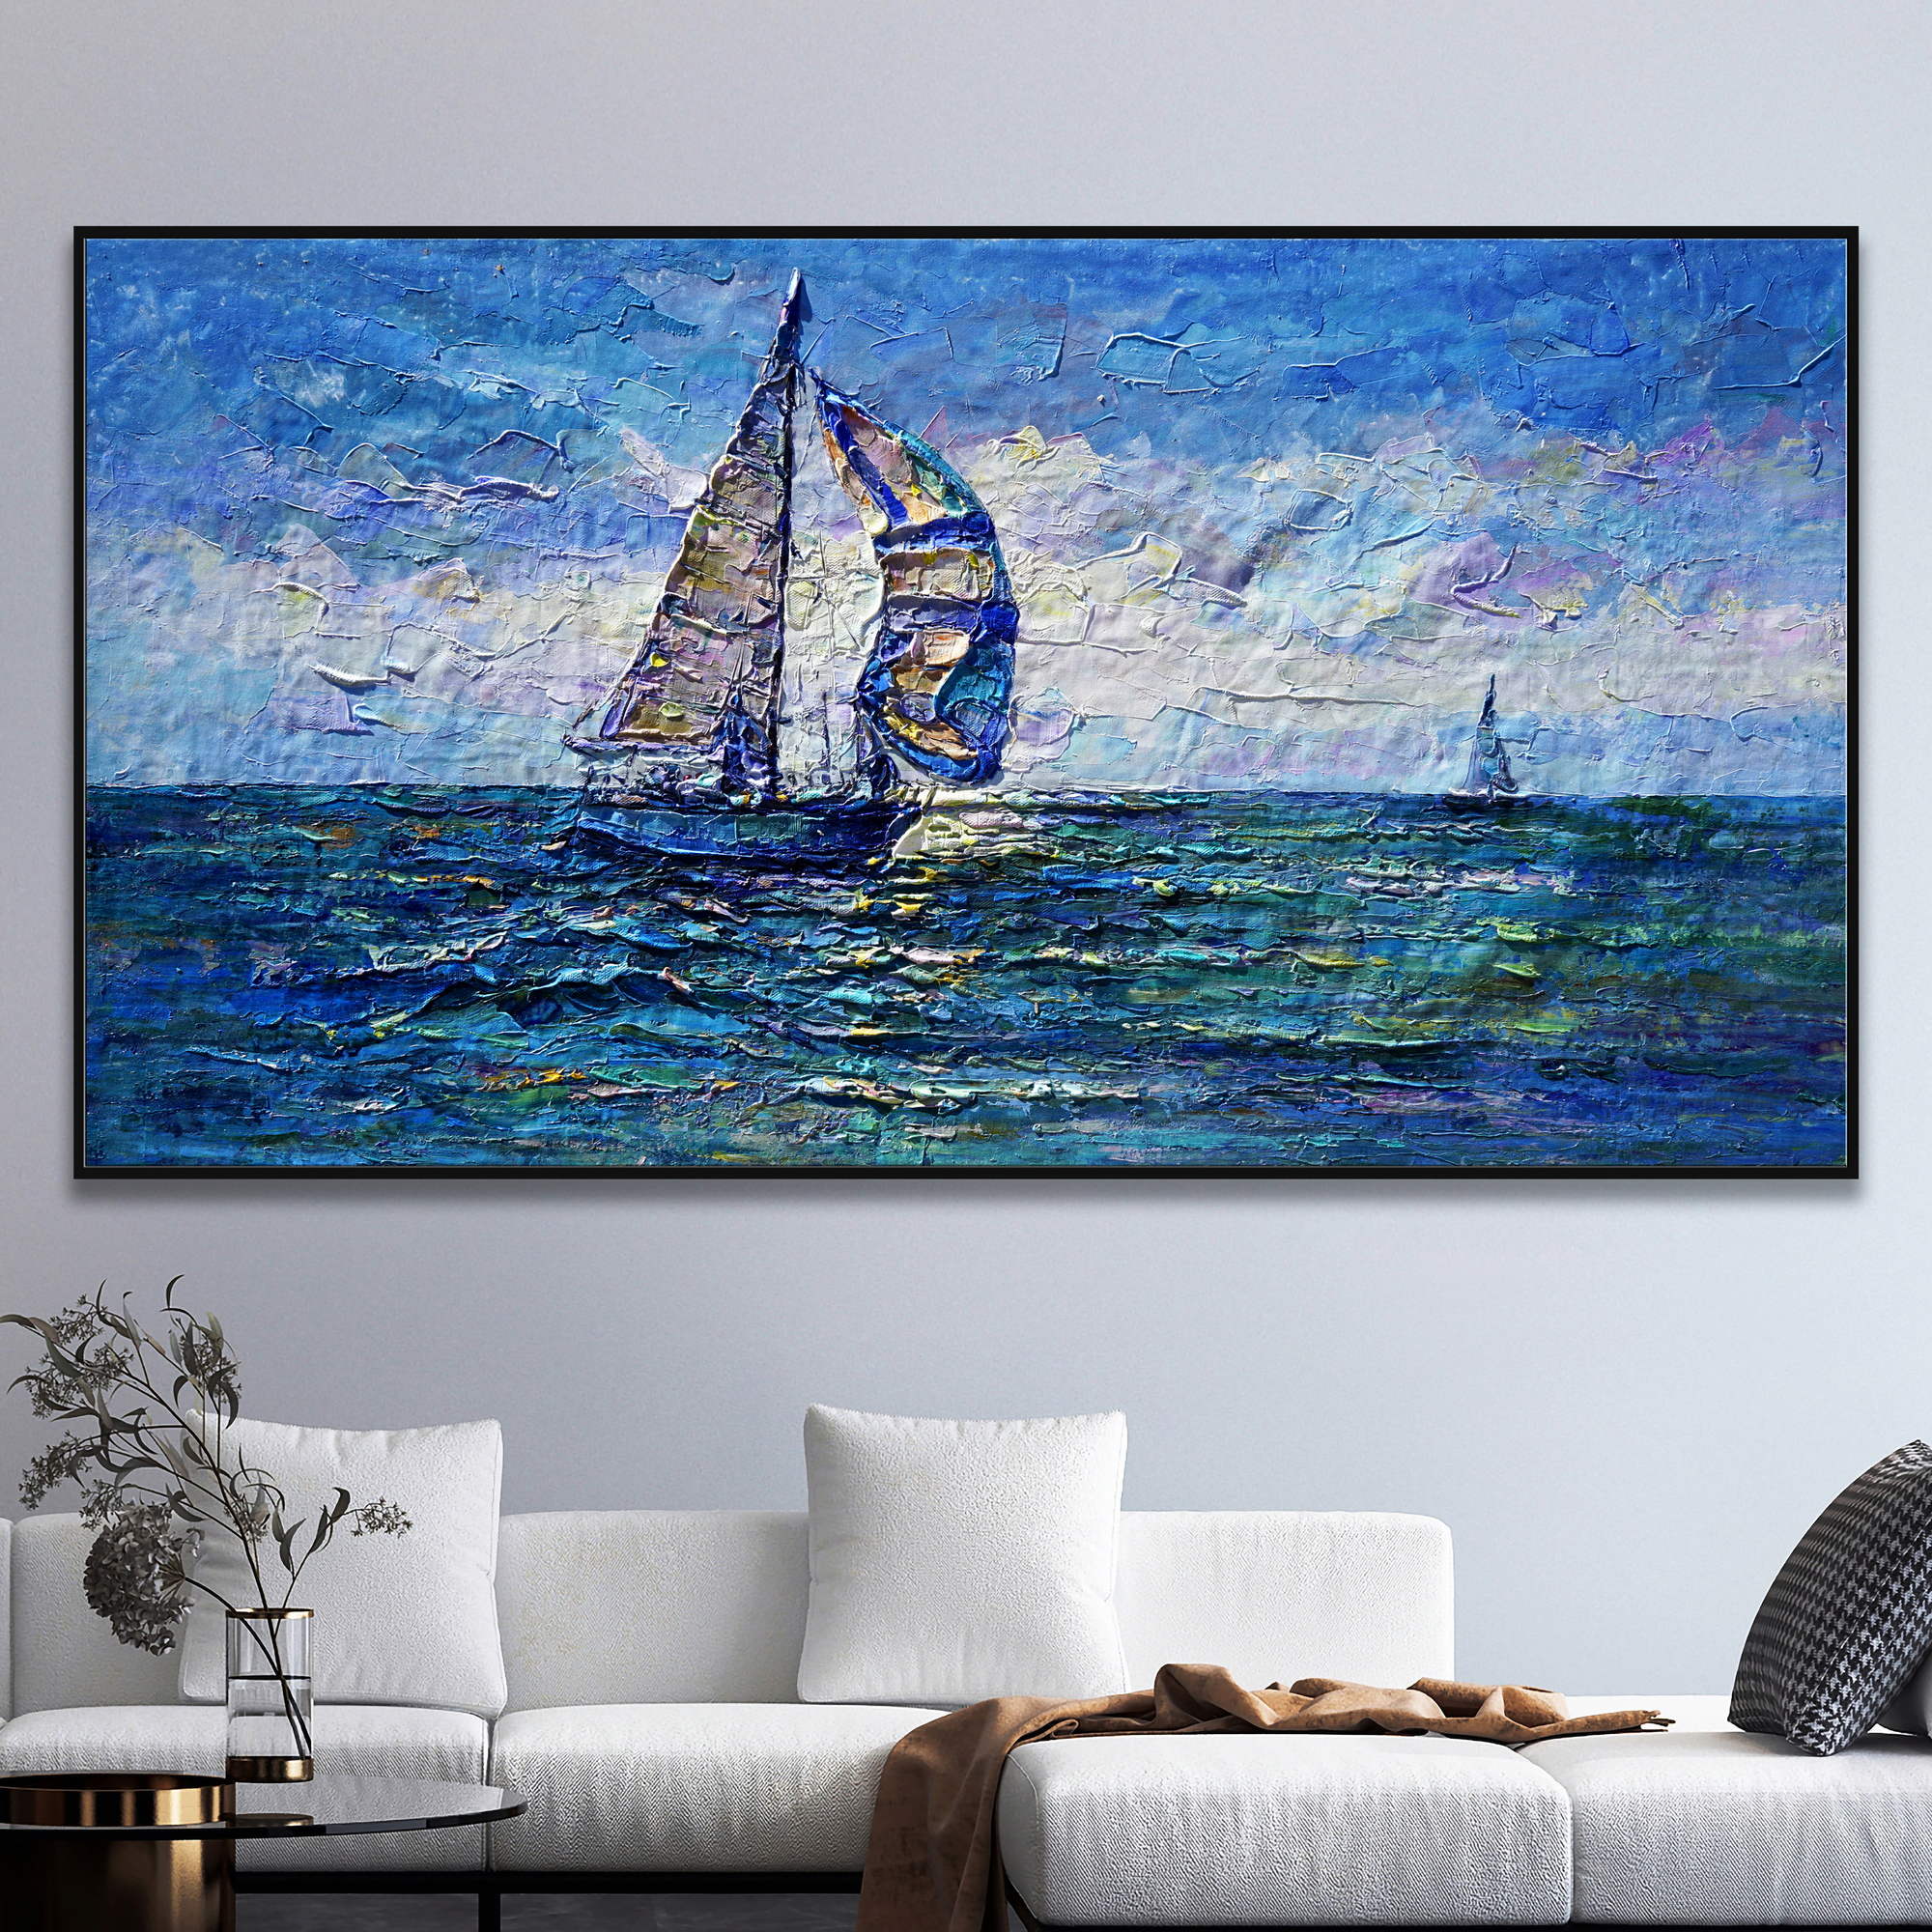 Dipinto di una barca a vela in mare con cielo blu e nuvole.